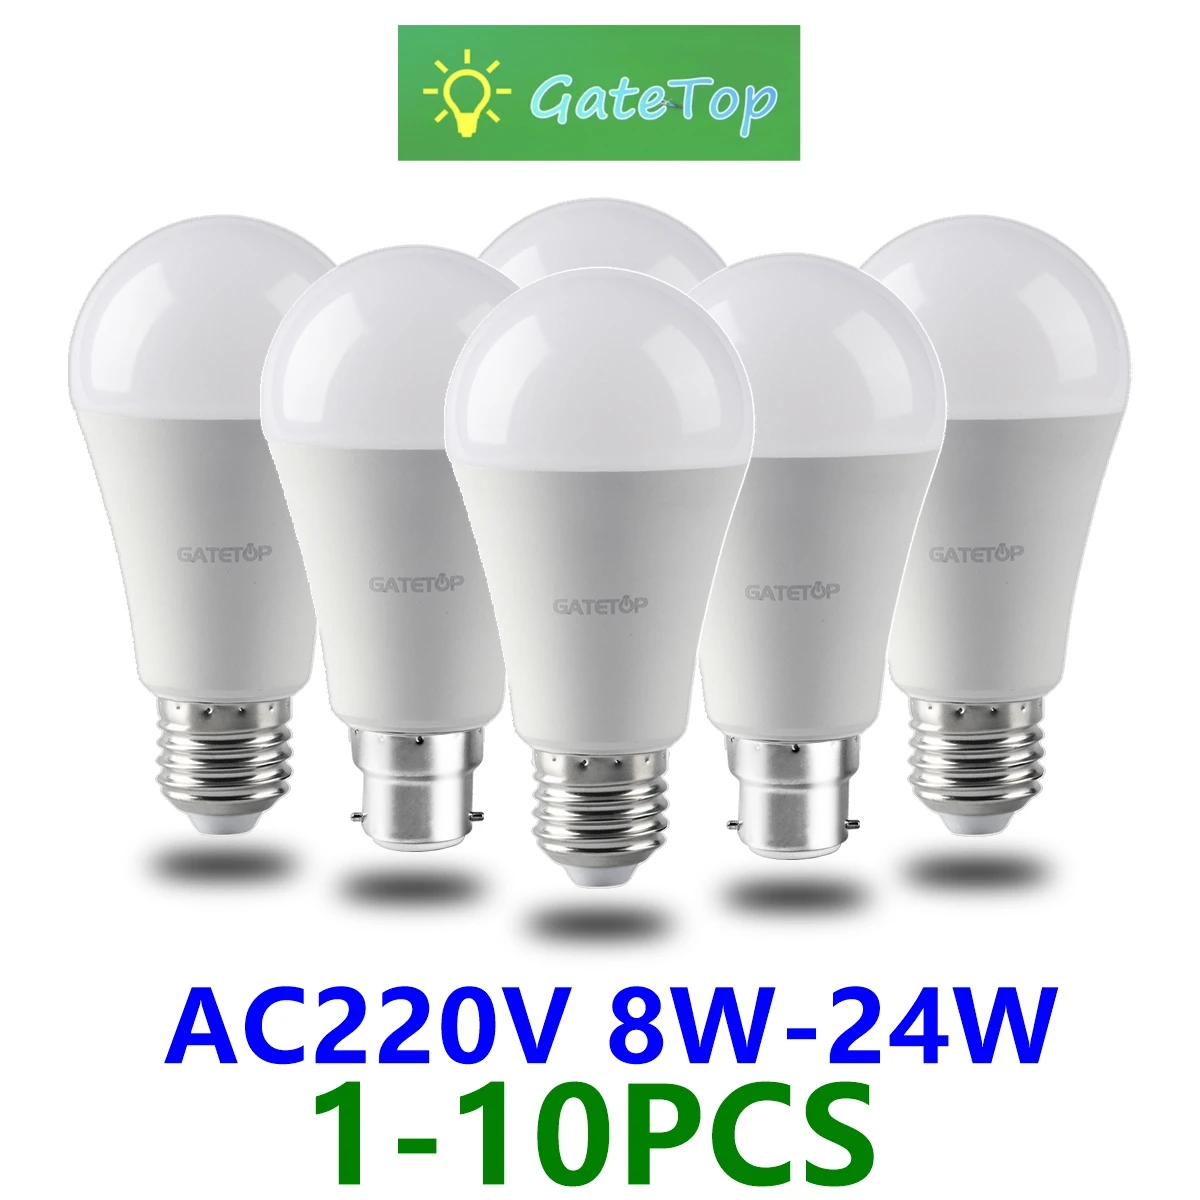 

1-10PCS Led Bulb Lamps Light Real Power AC220V 8W-24W 3000K/4000K/6000K E27 B22 Super Bright Warm White Light Lampada for Home